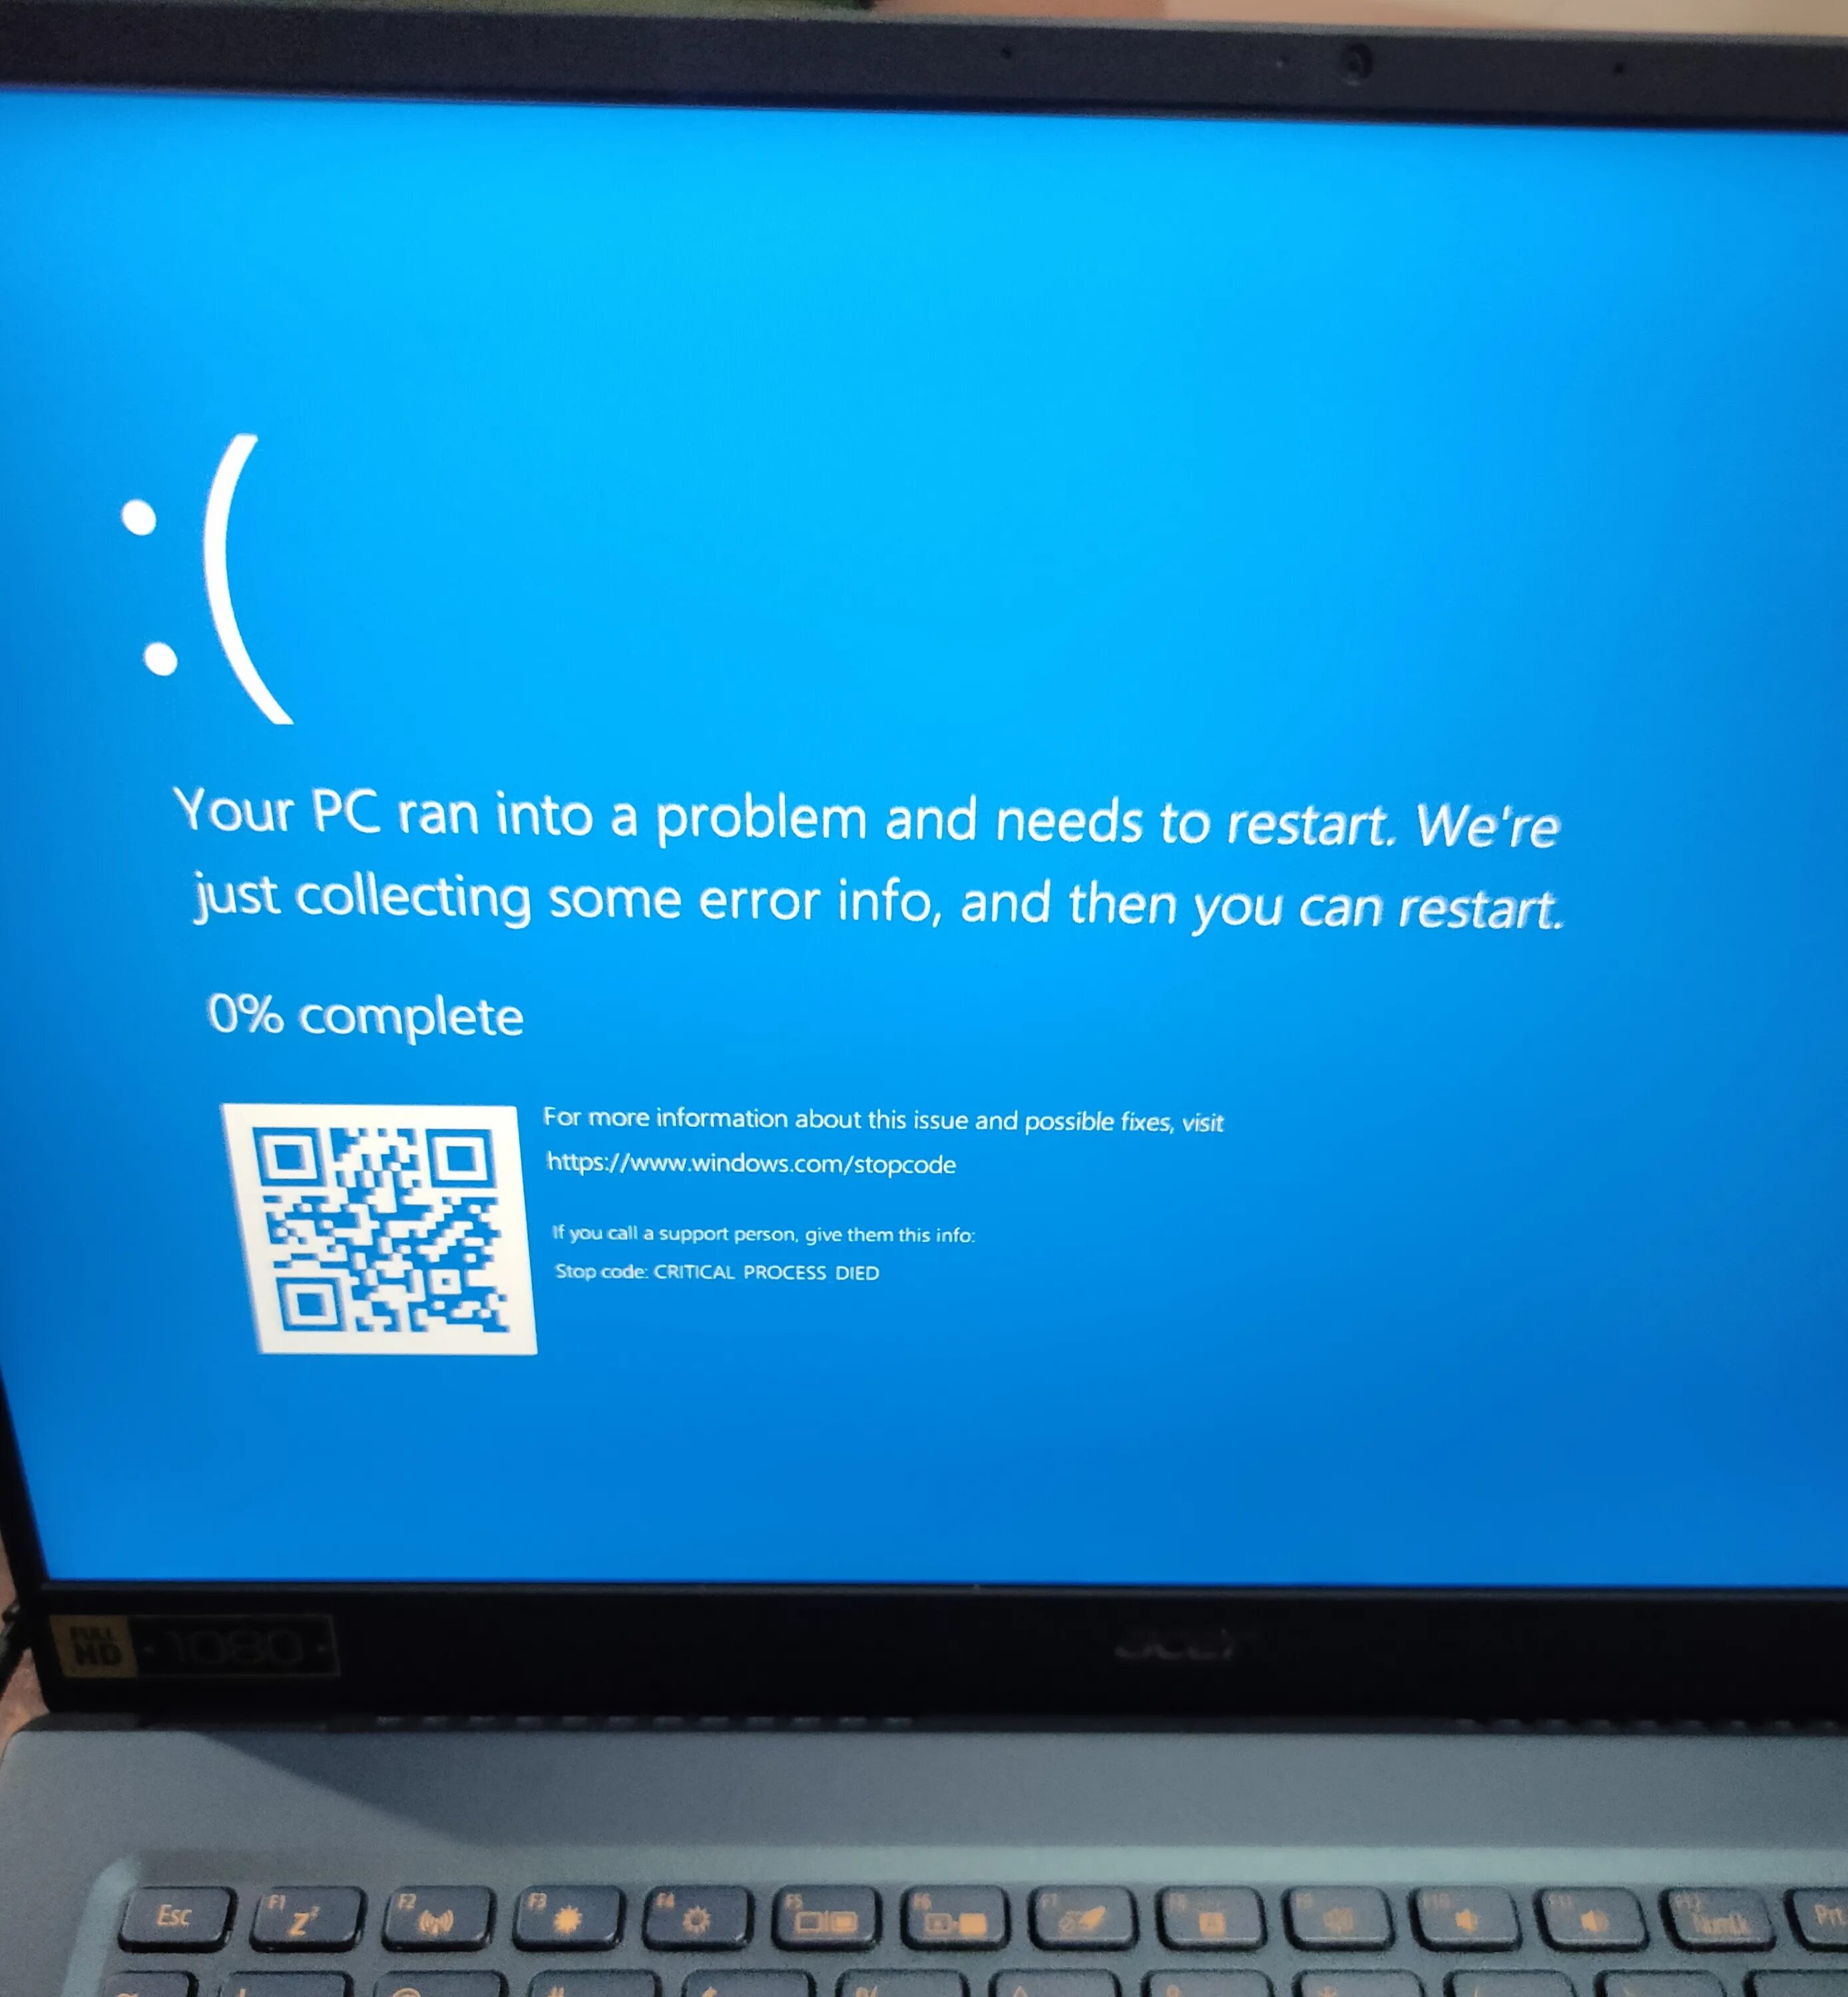 Синий экран смерти Kernel. Синий экран смерти Windows 10 Kernel data inpage Error. Экран смерти critical process died. Синий экран с надписями. Синий экран windows 10 critical process died